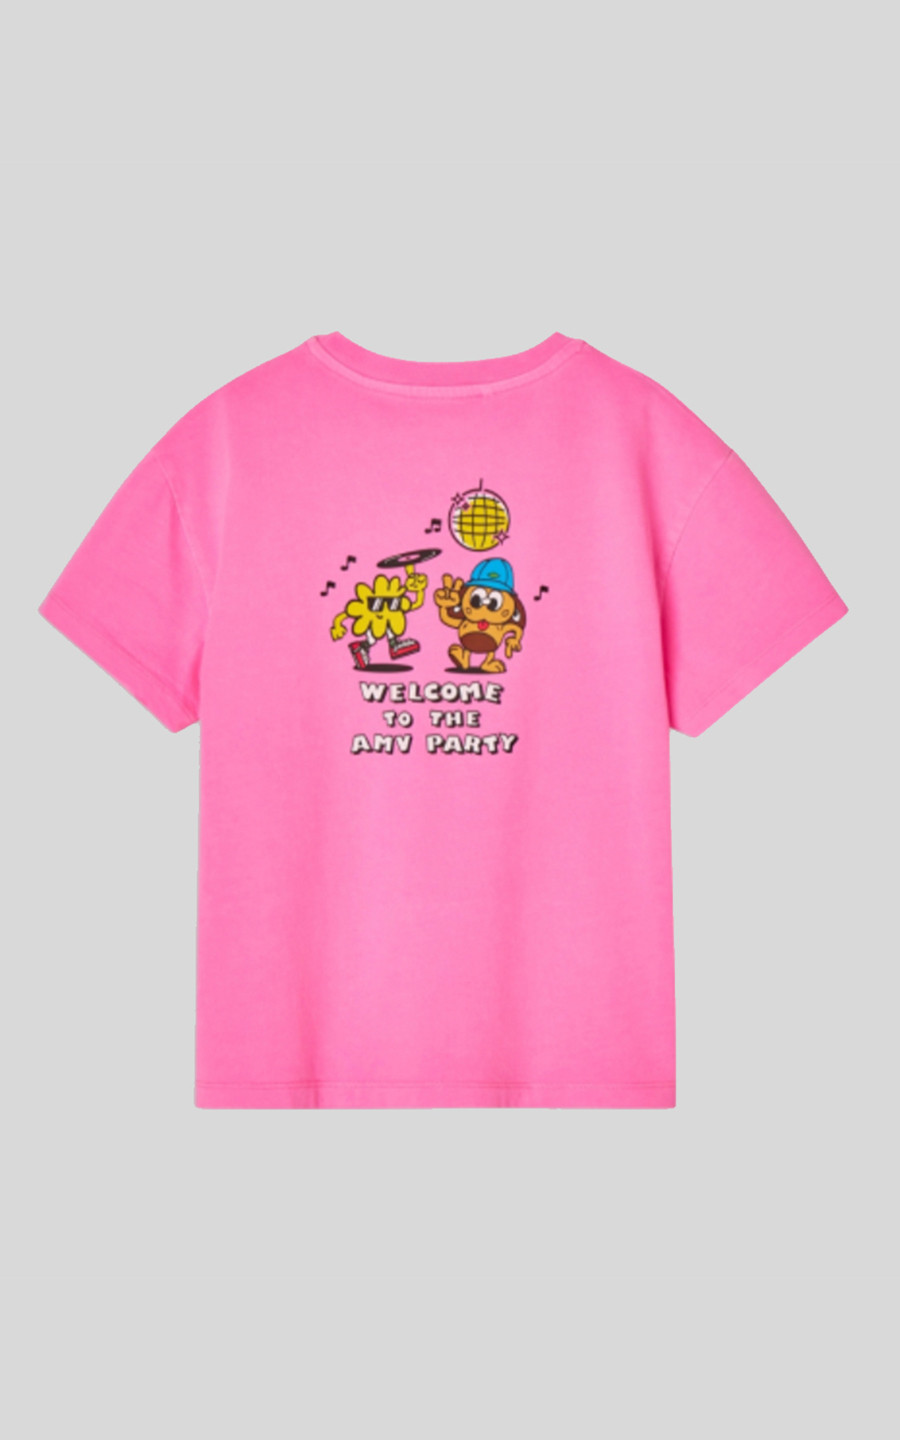 Roze T-shirt km image